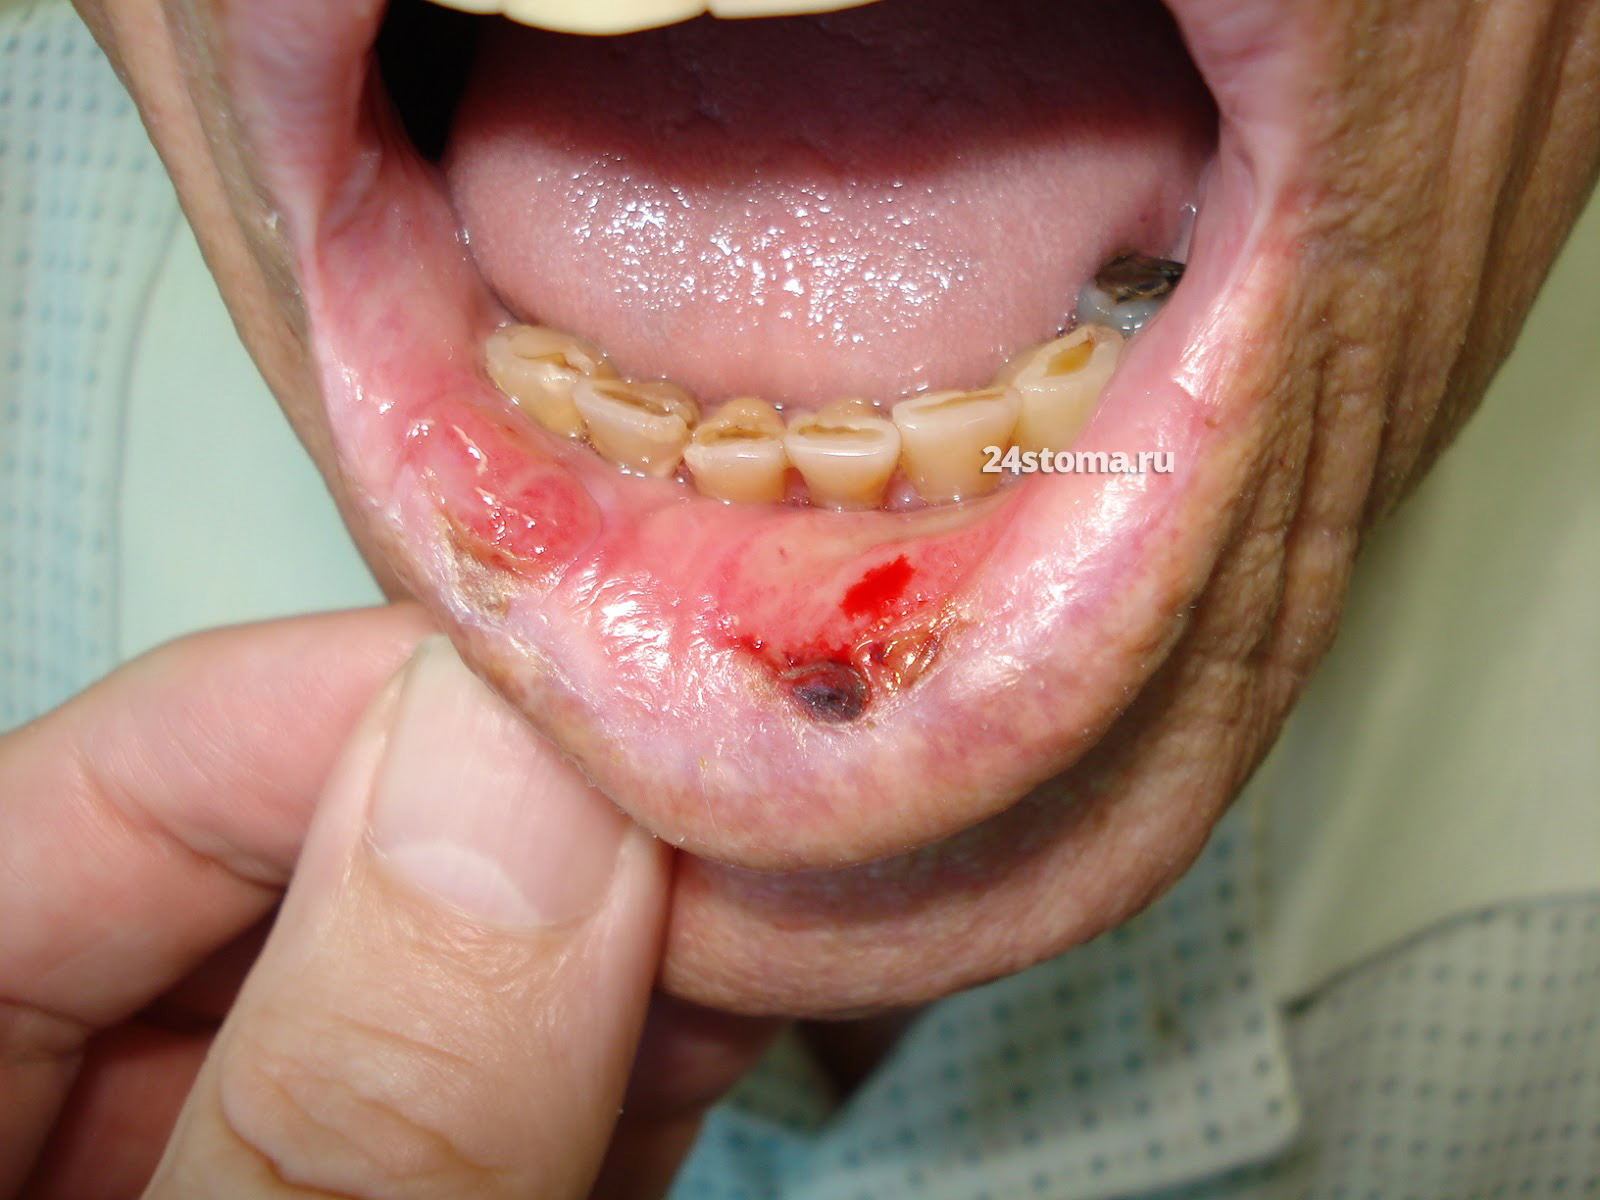 Плоскоклеточный рак нижней губы (плоскоклеточная карцинома)